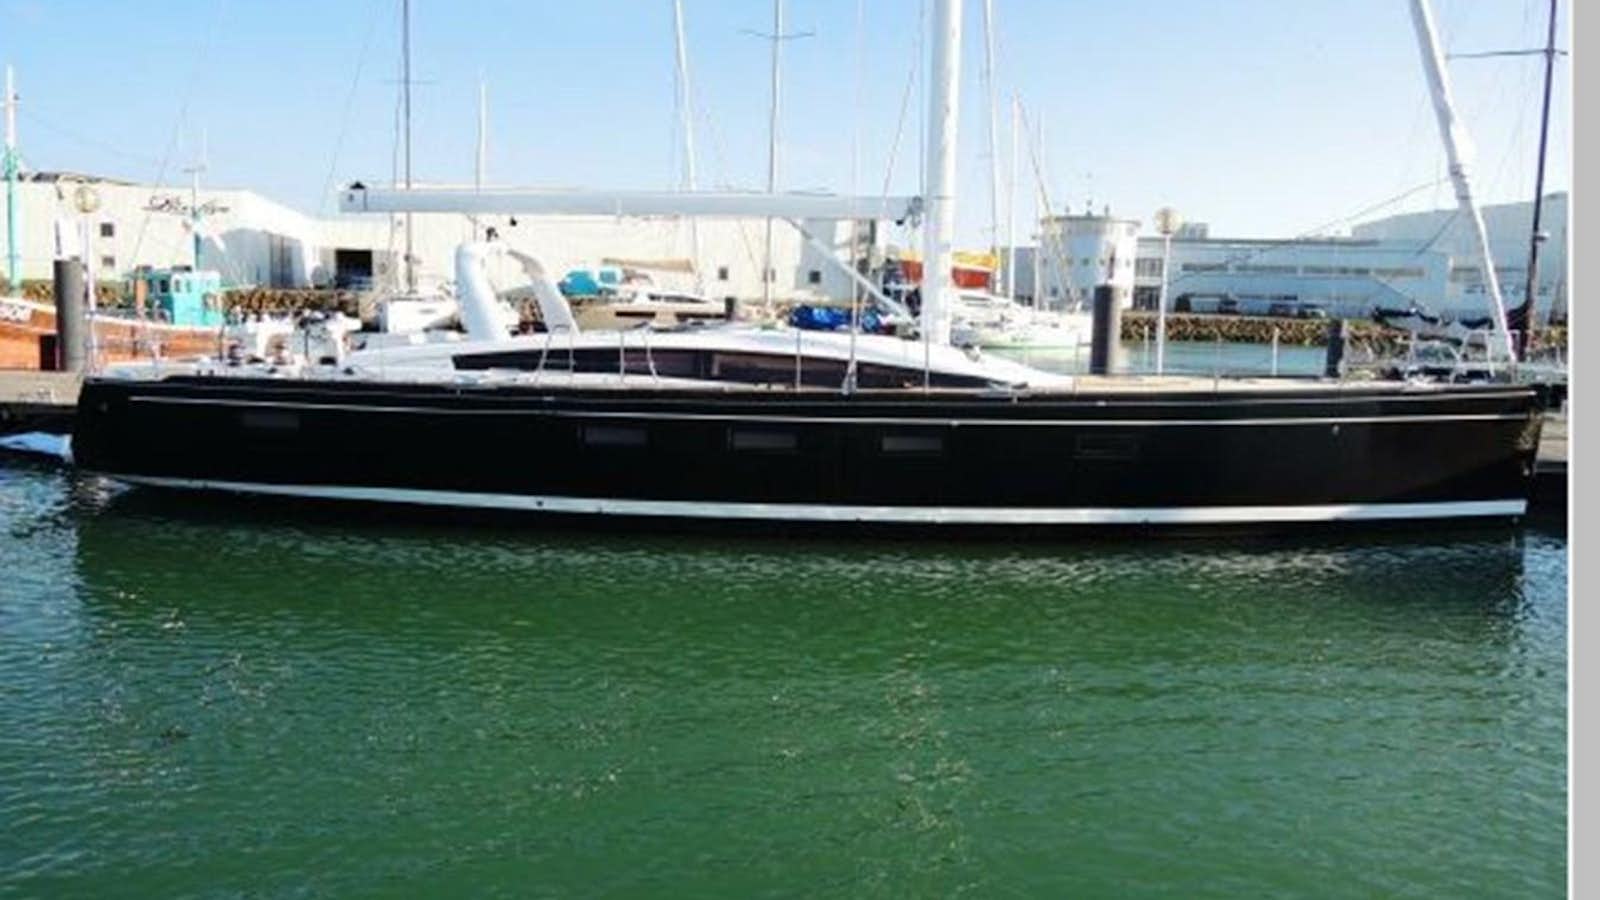 2019 jeanneau jy 64
Yacht for Sale